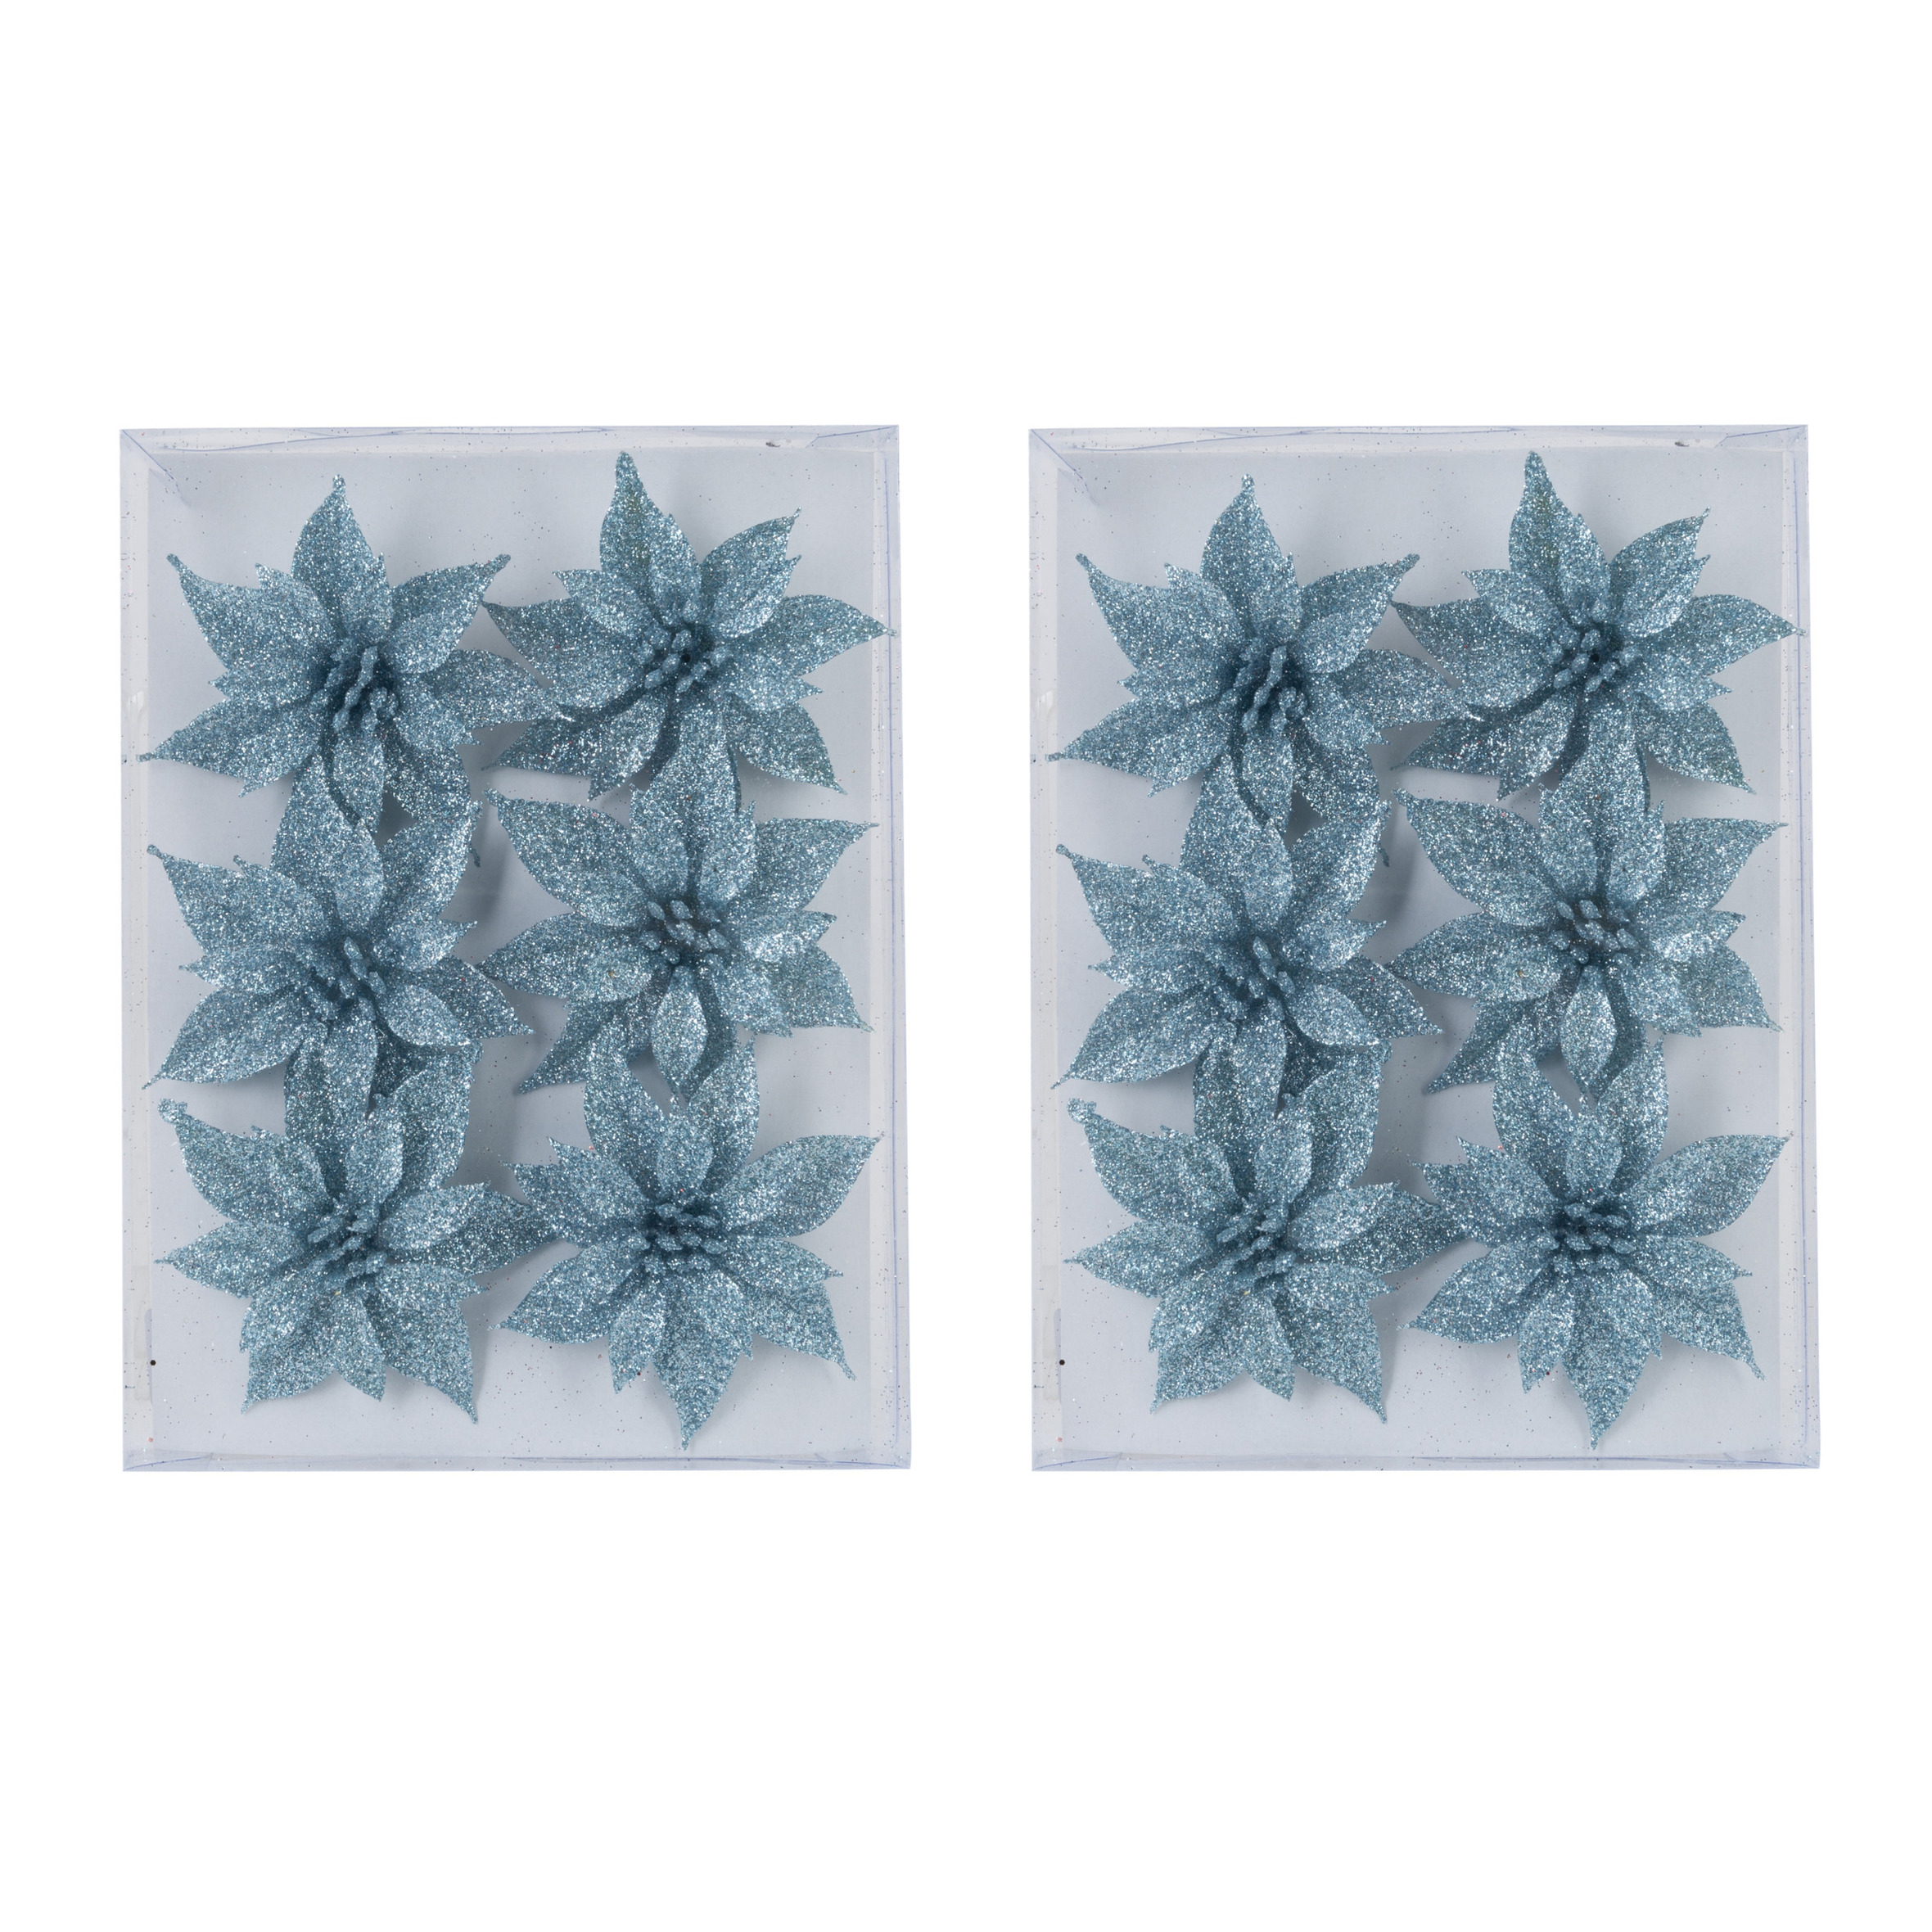 18x stuks decoratie bloemen rozen ijsblauw glitter op ijzerdraad 8 cm